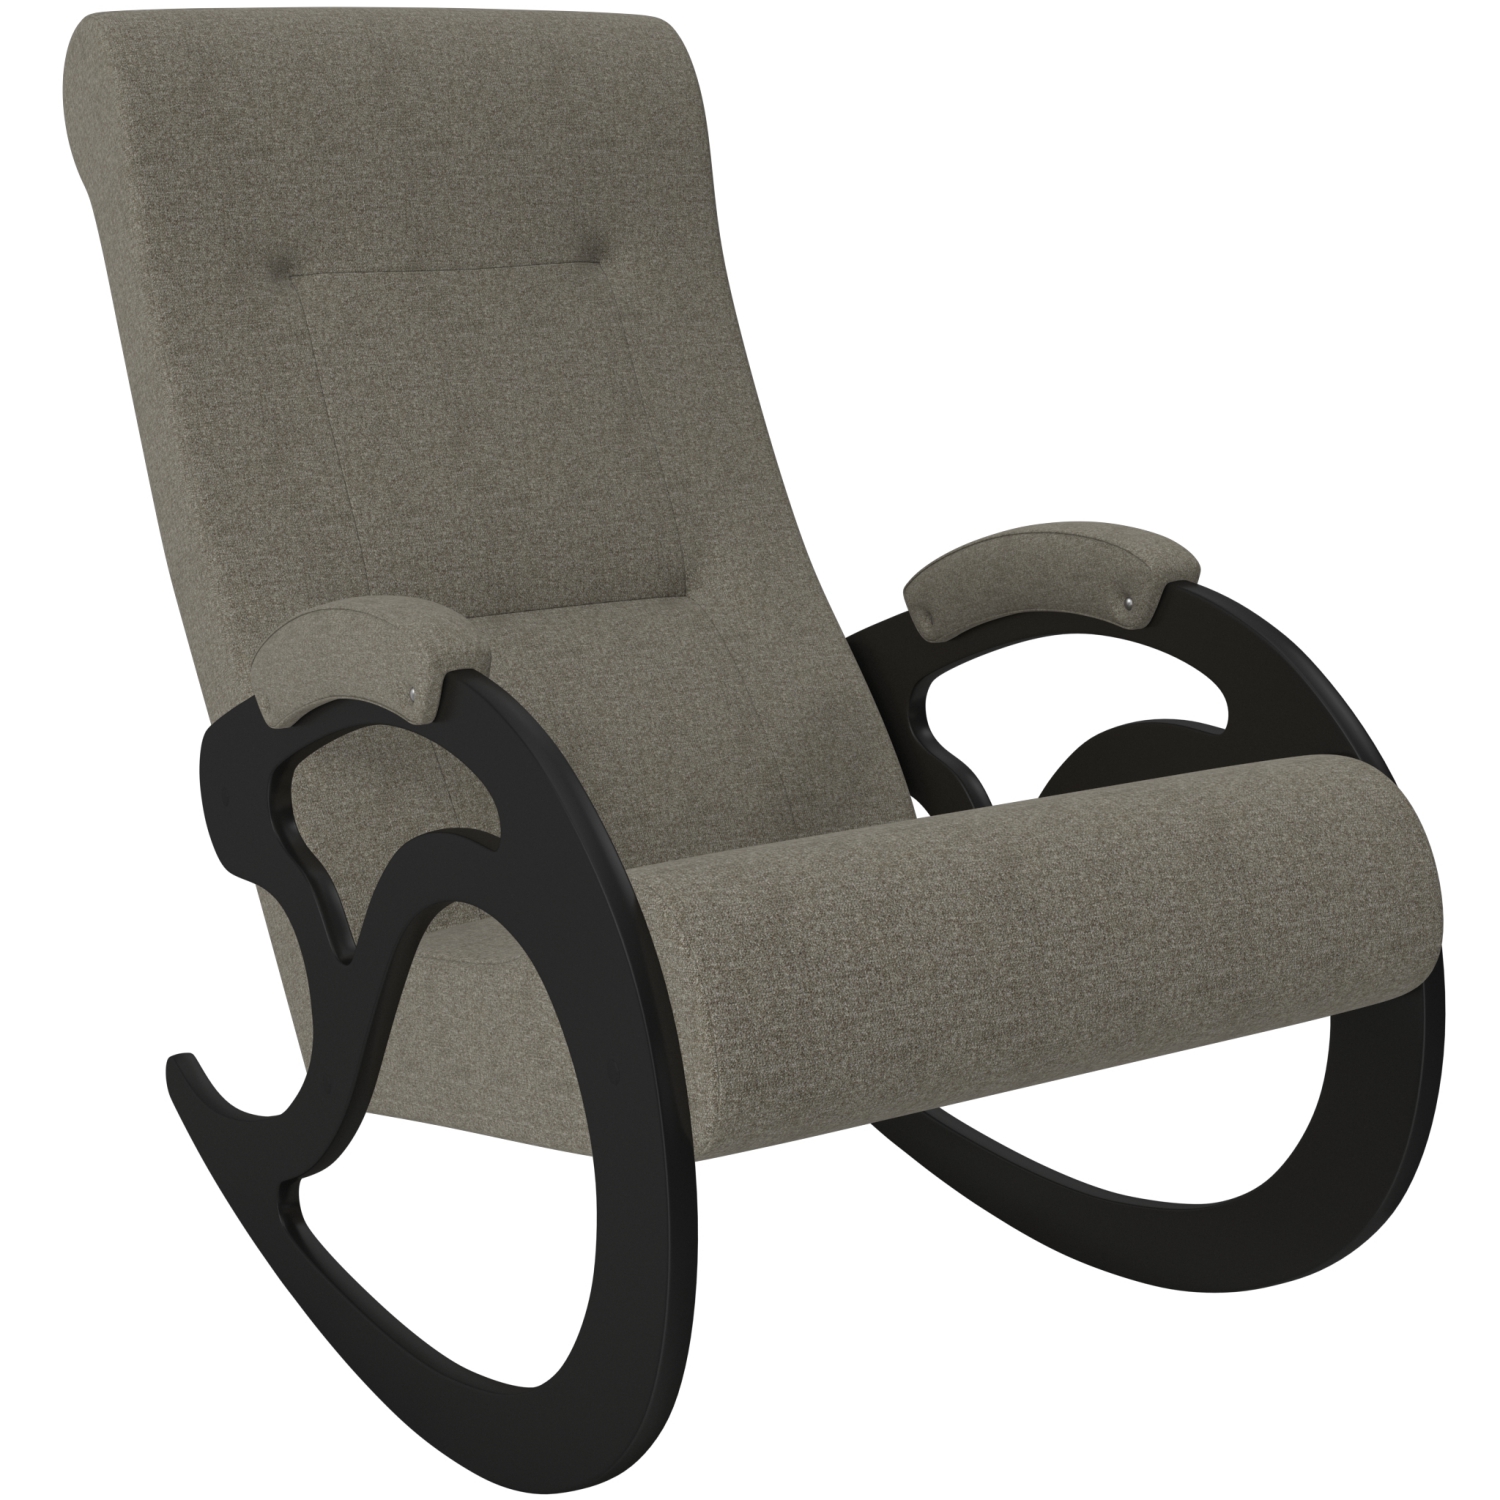 Кресло-качалка классическая модель 5 с подголовником фото 1